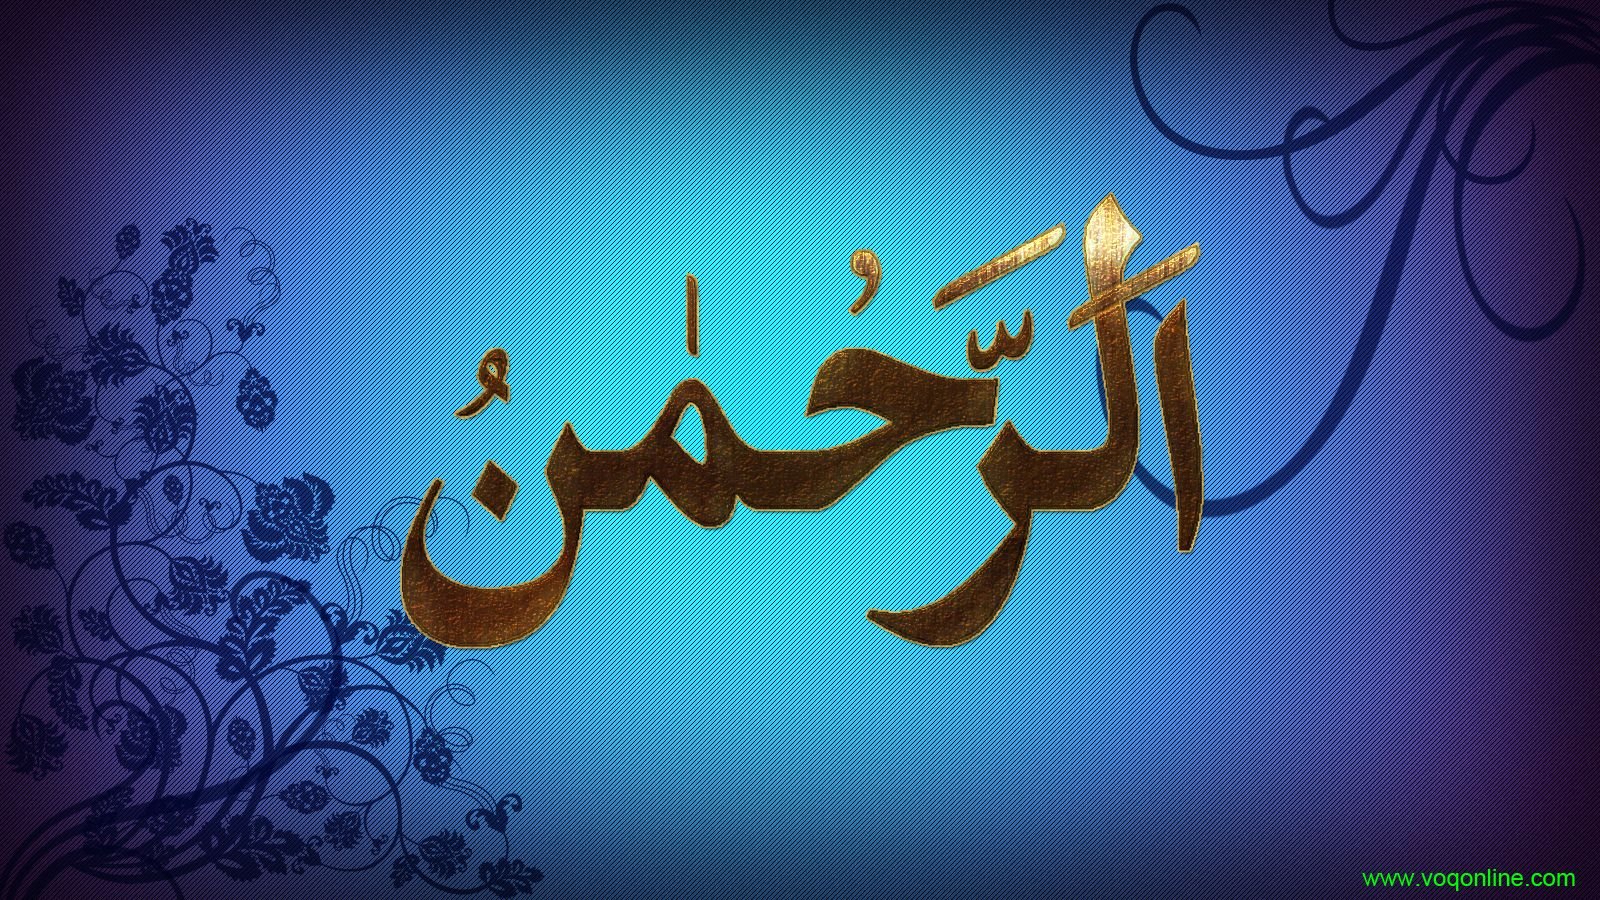 Праздник на арабском языке. Исламские картинки. Пожелания на арабском. Красивые арабские картины. Счастье на мусульманском языке.